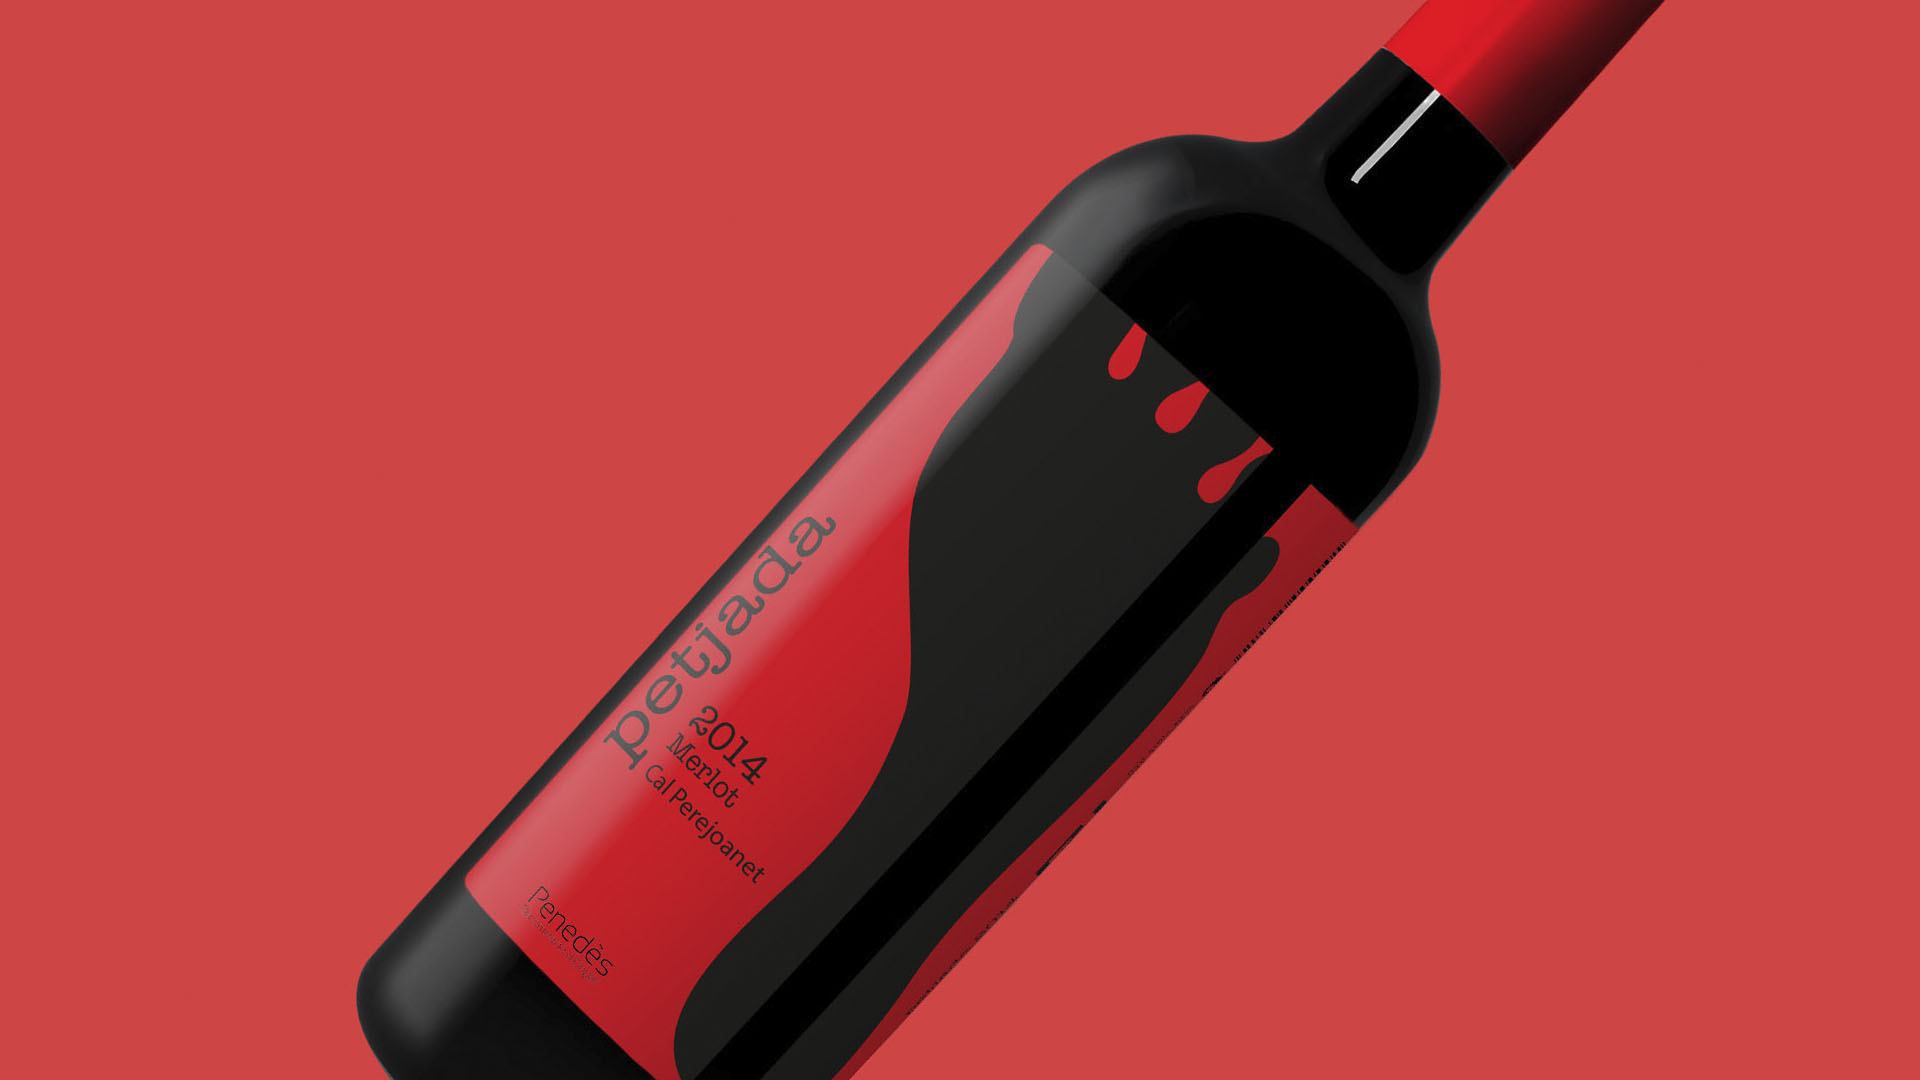 Imatge amb una ampolla de vi i la seva etiqueta